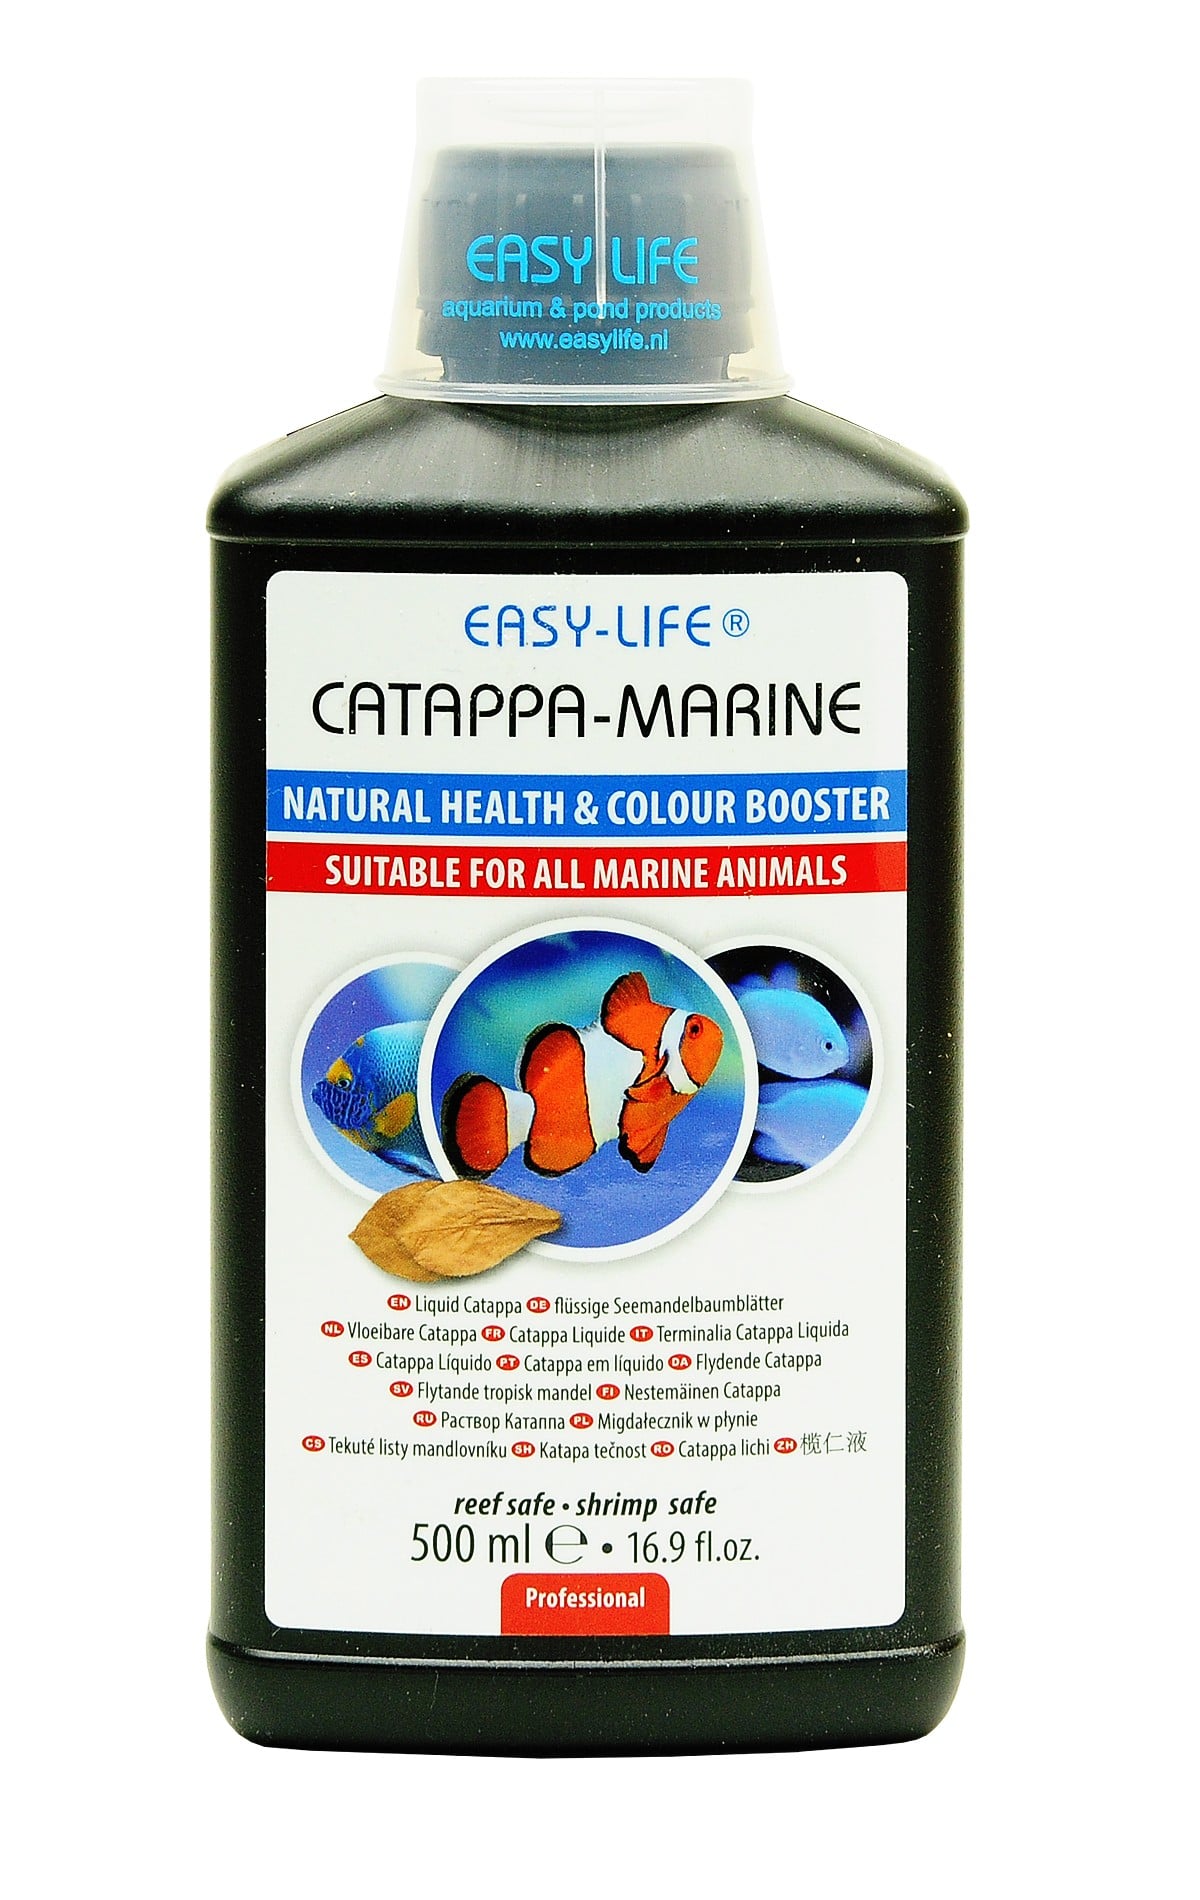 easy-life-catappa-marine-500-ml-produit-naturel-assurant-la-bonne-sante-et-coloration-des-poissons-marins-min